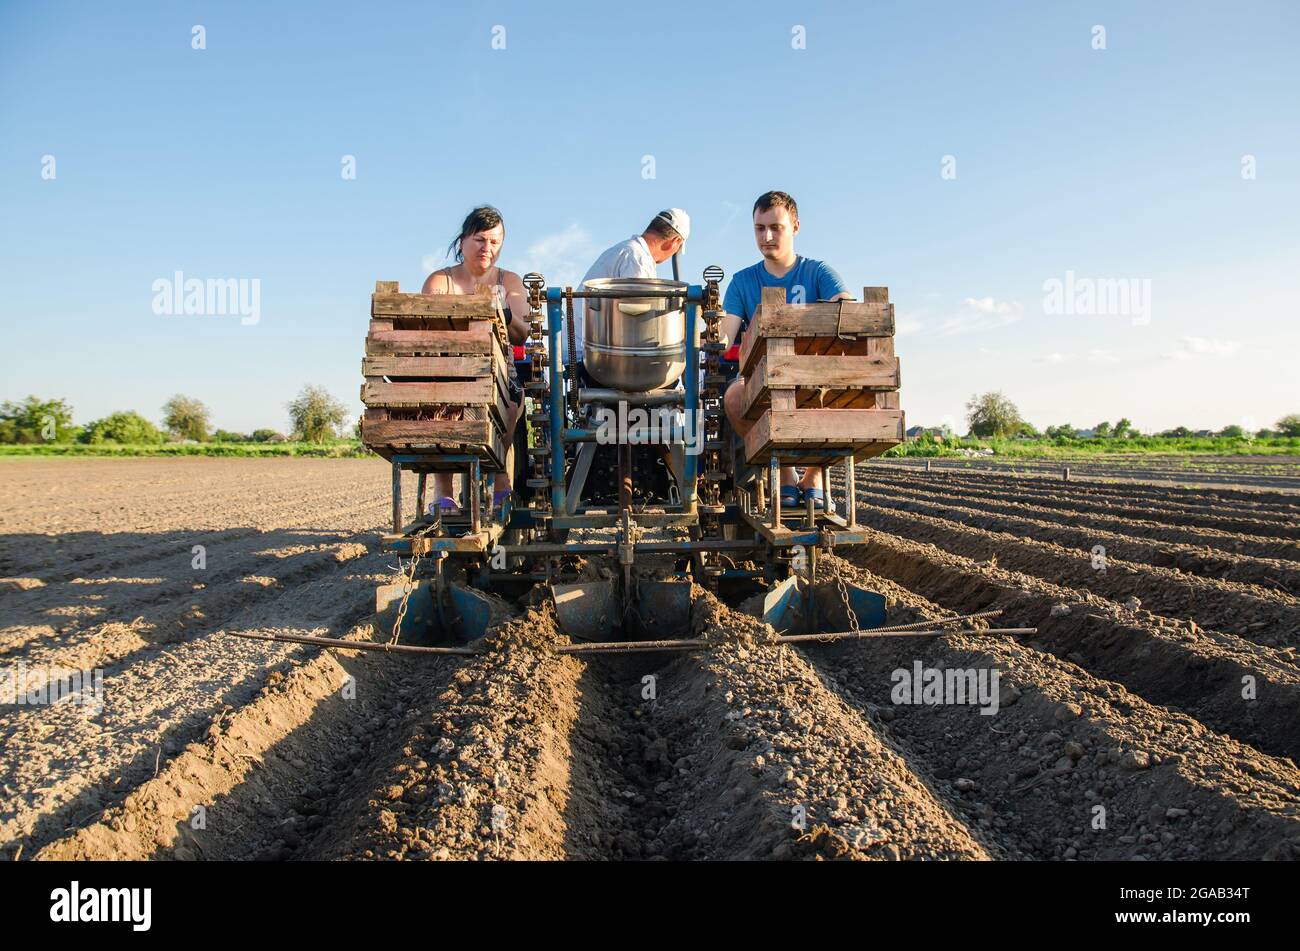 Arbeiter auf einem Traktor Pflanzen Kartoffeln an. Automatisierung des Prozesses der Pflanzung von Kartoffelsamen. Hohe Effizienz und Geschwindigkeit. Landwirtschaftliche Technologien. Stockfoto